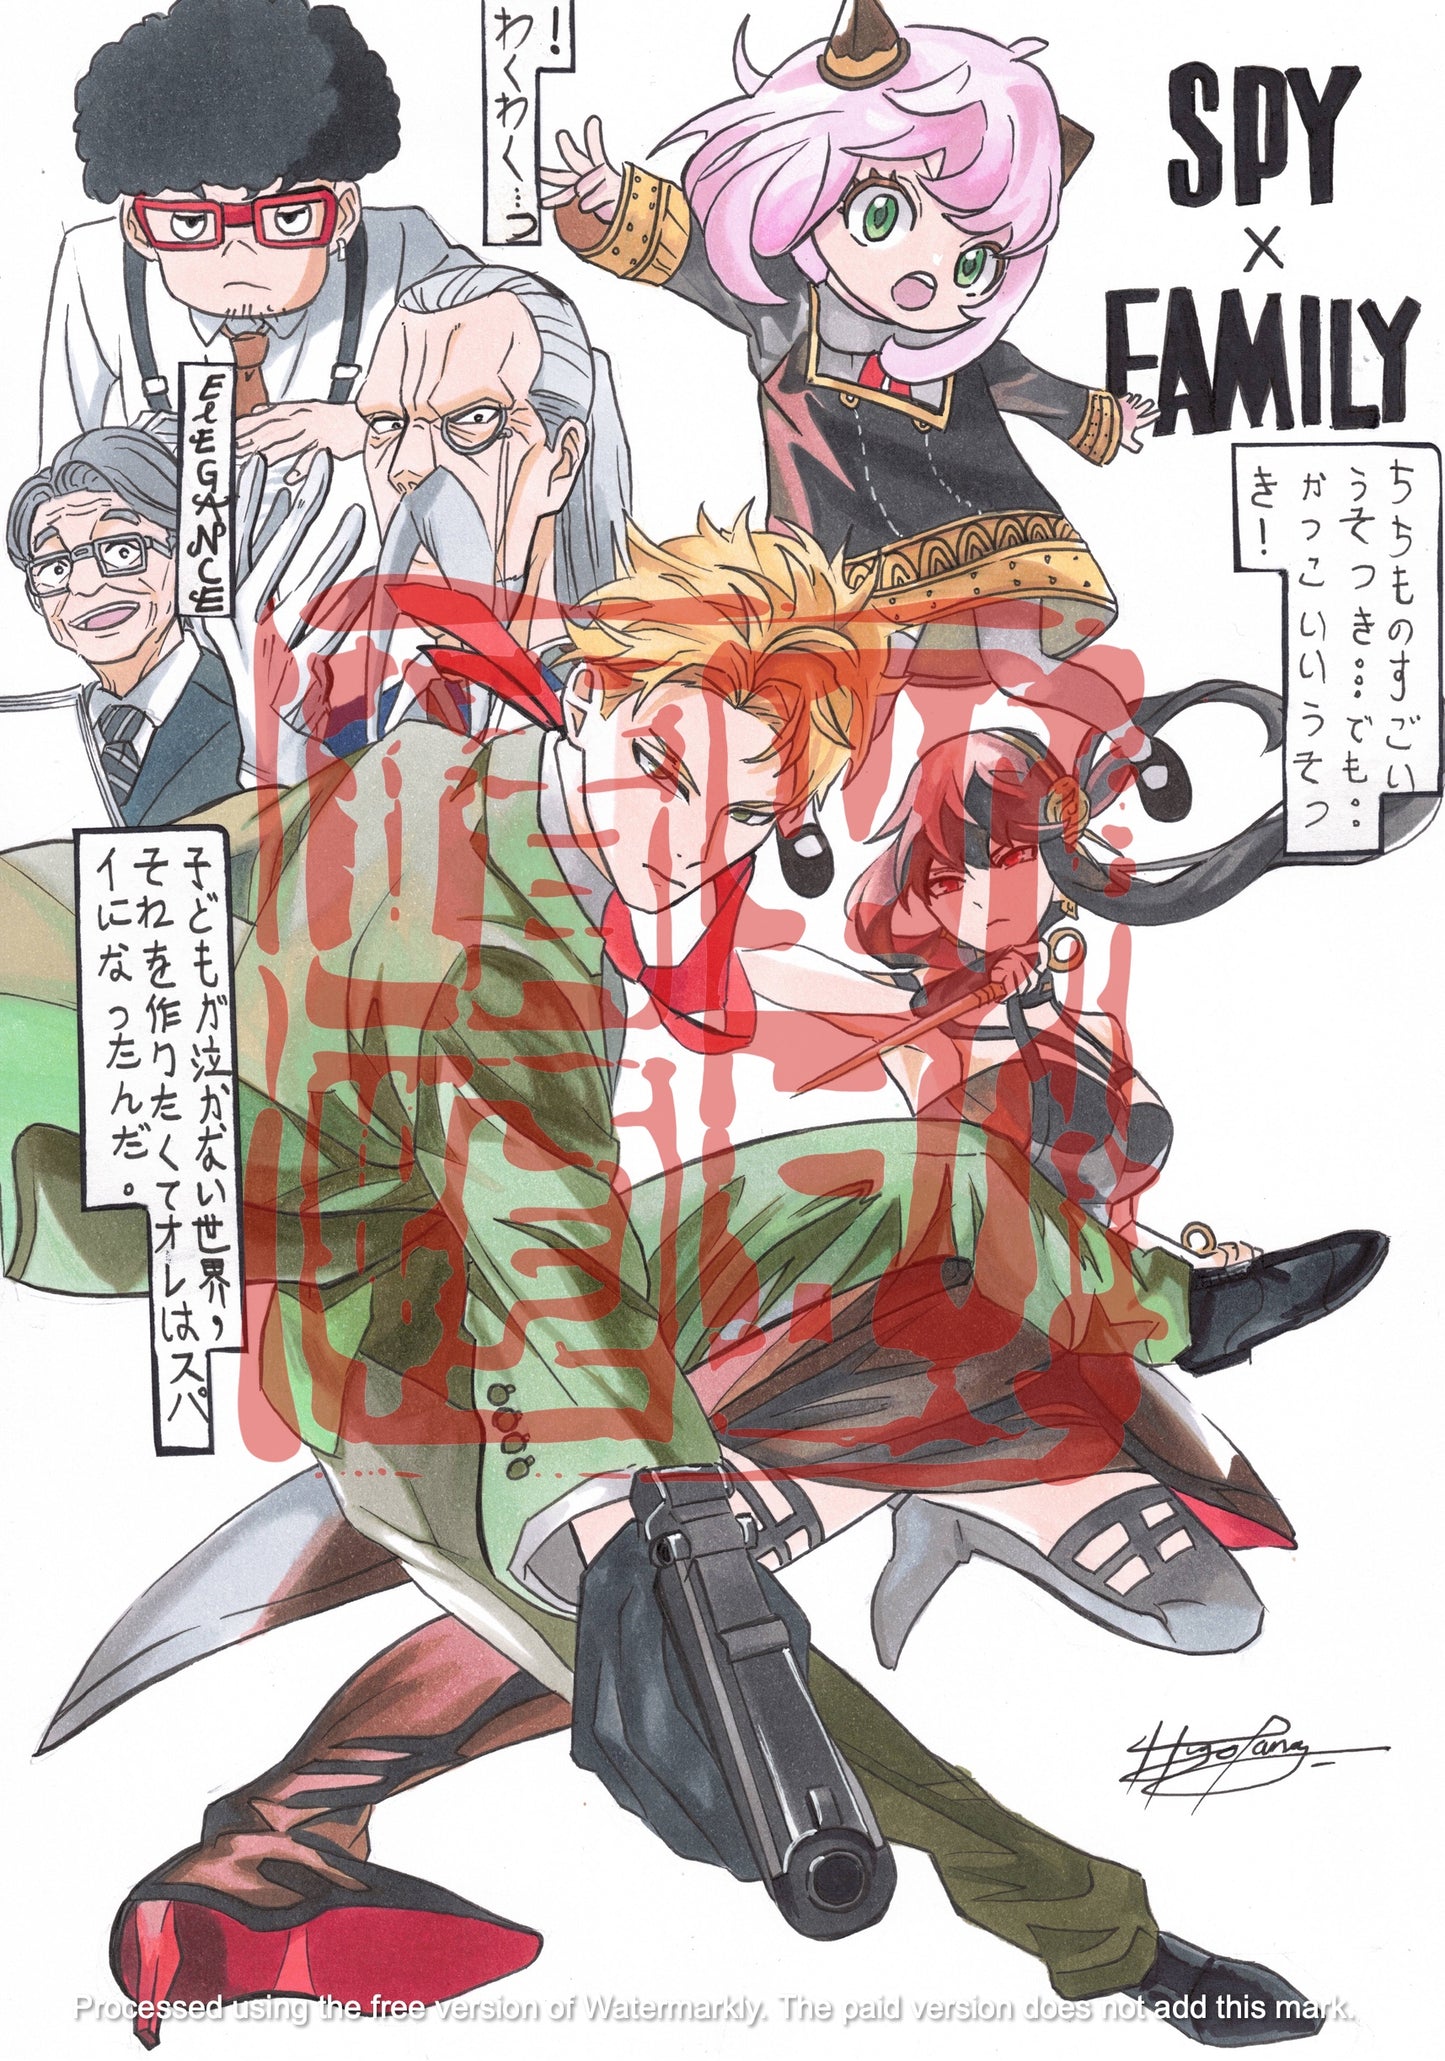 Spy x Family Art print by hugo219.draws